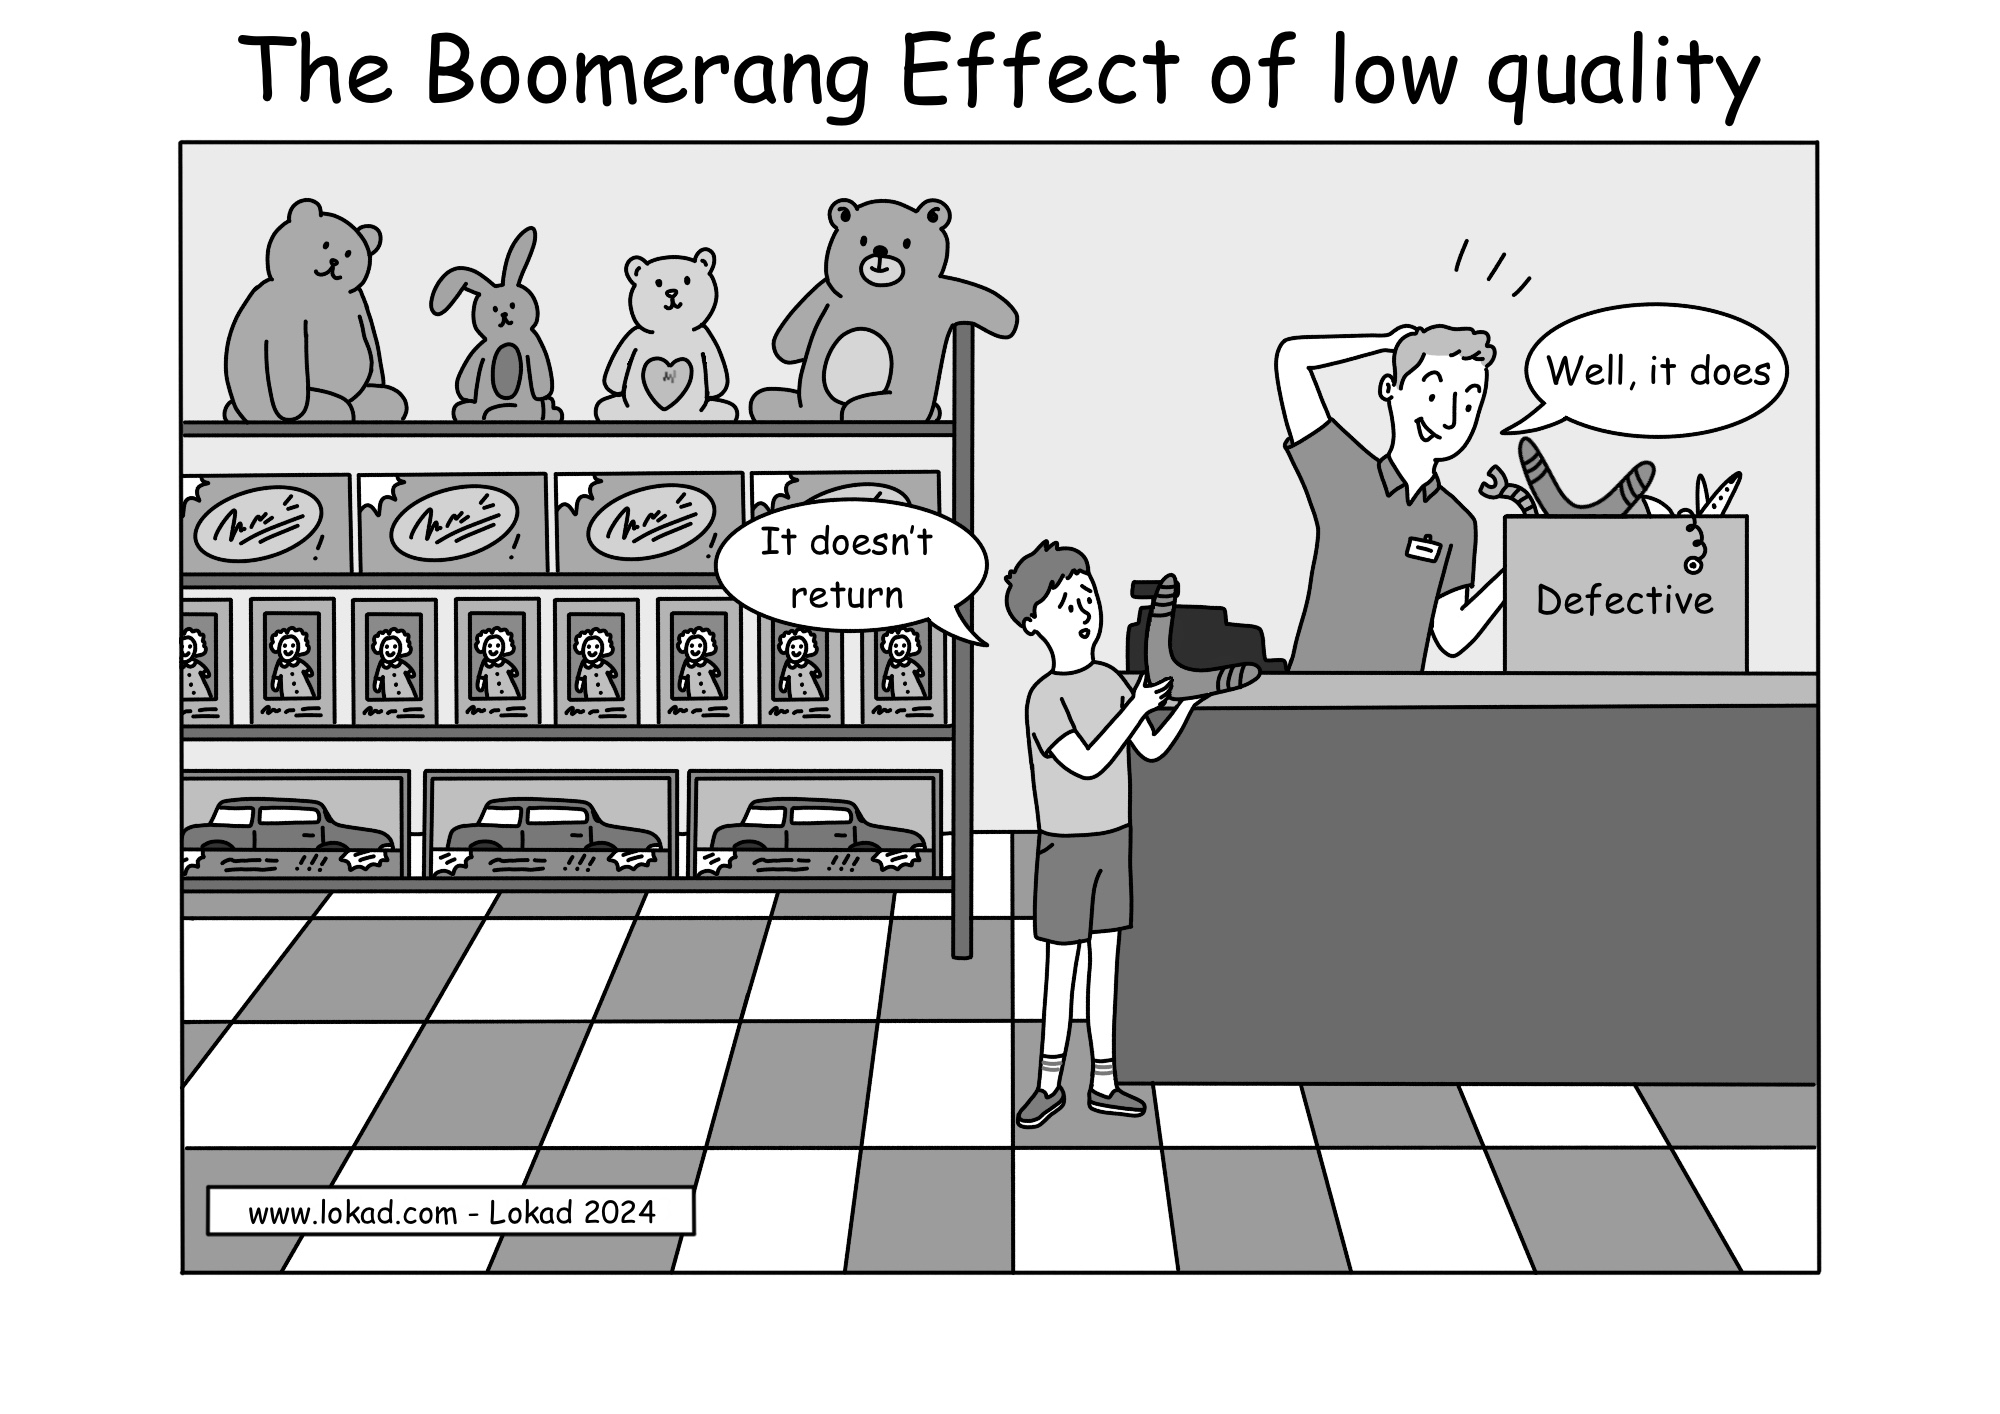 L'effetto boomerang della bassa qualità.